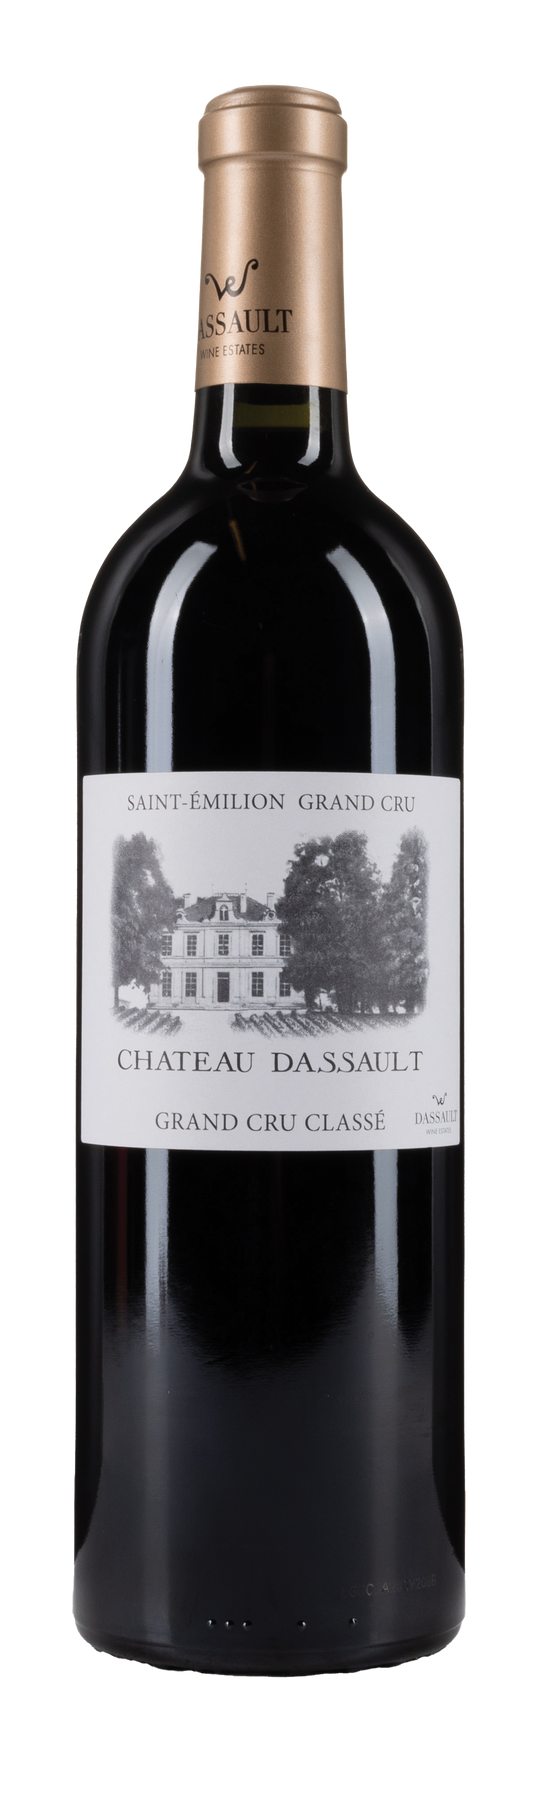 Château Dassault 2020 75cl Saint-Emilion Grand Cru AOP Grand Cru Classé